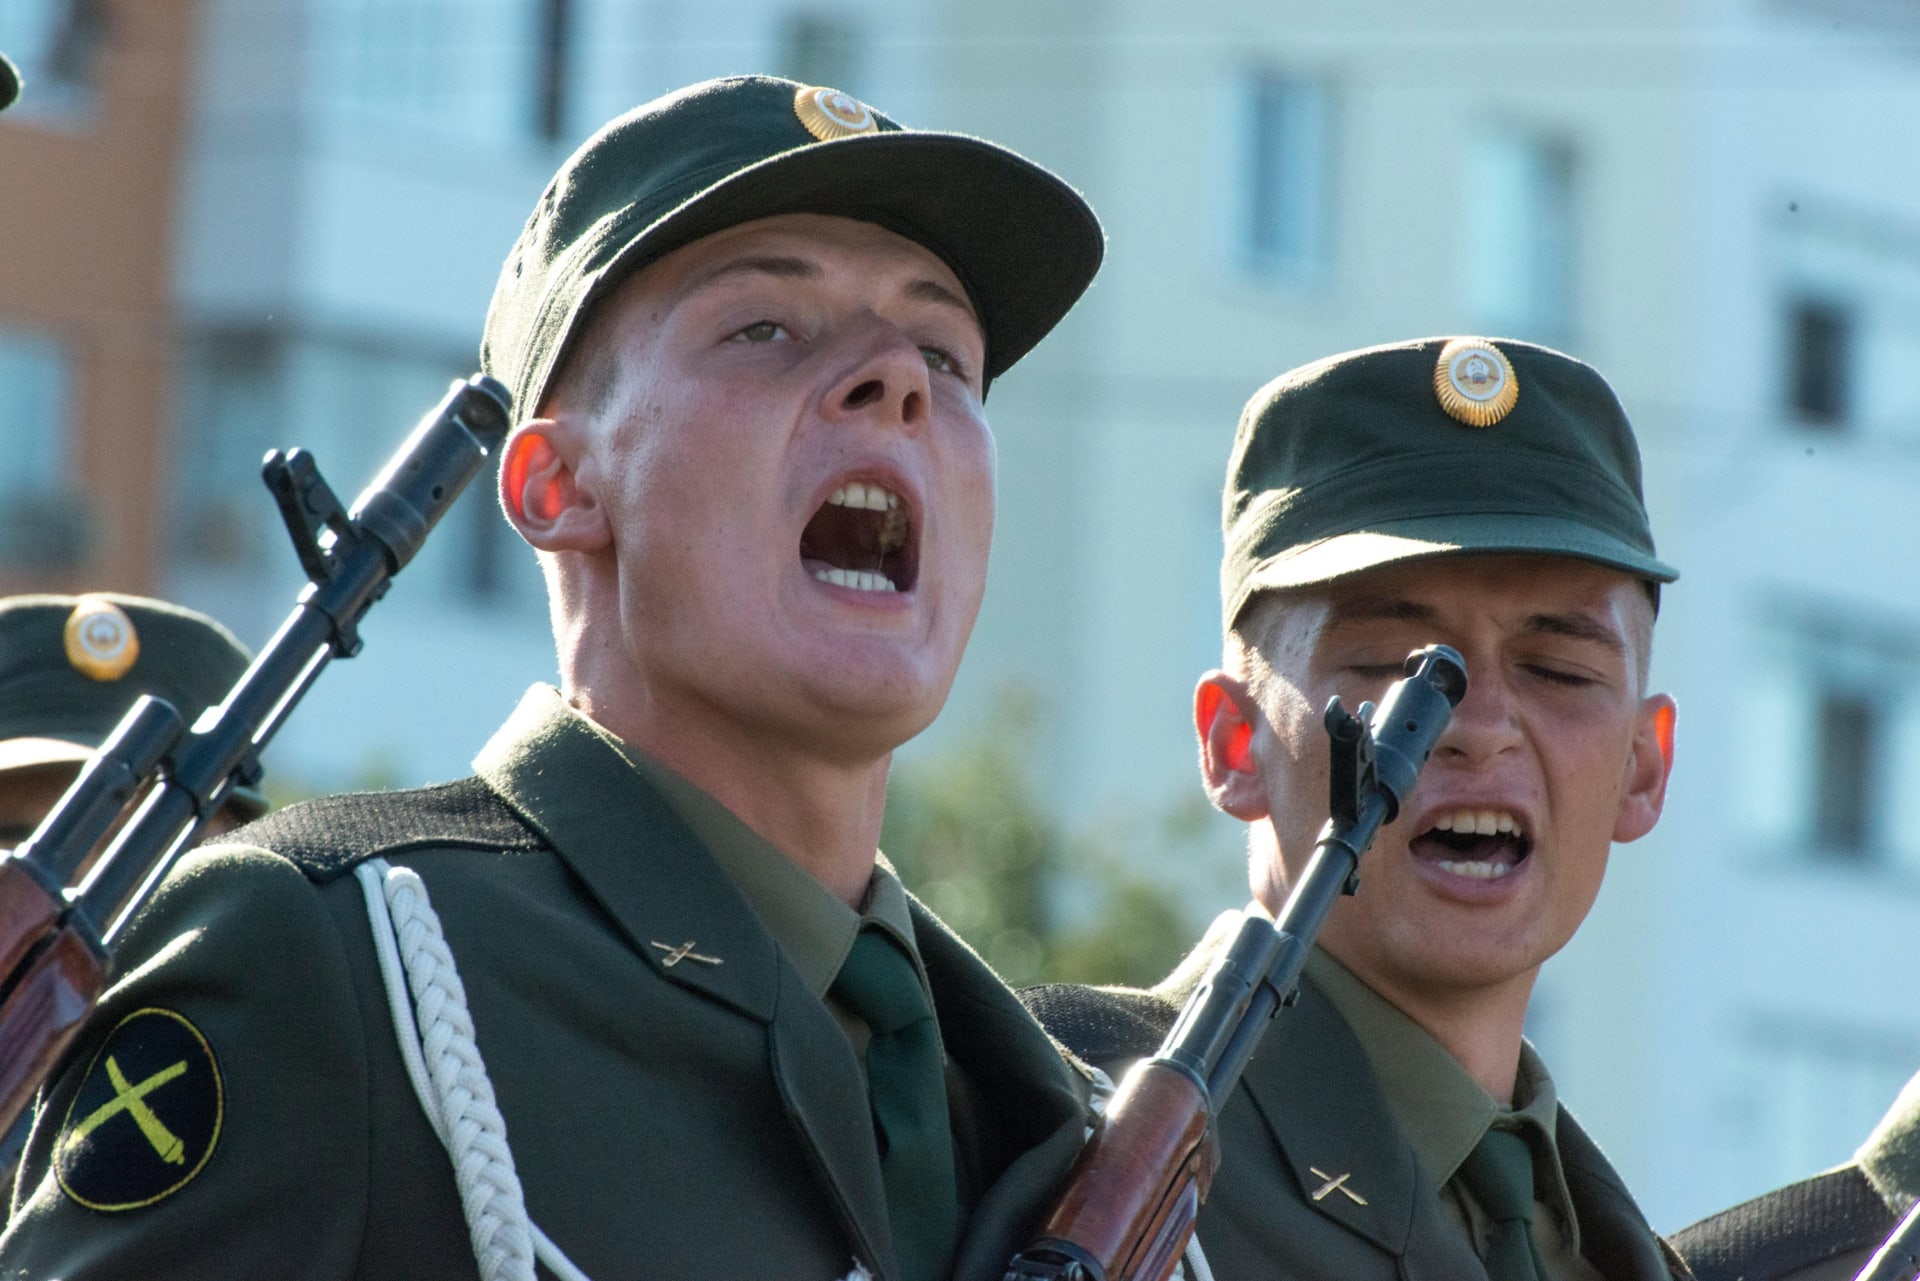 Vojáci oslavující výročí (světem neuznané) podněsterské nezávislosti.